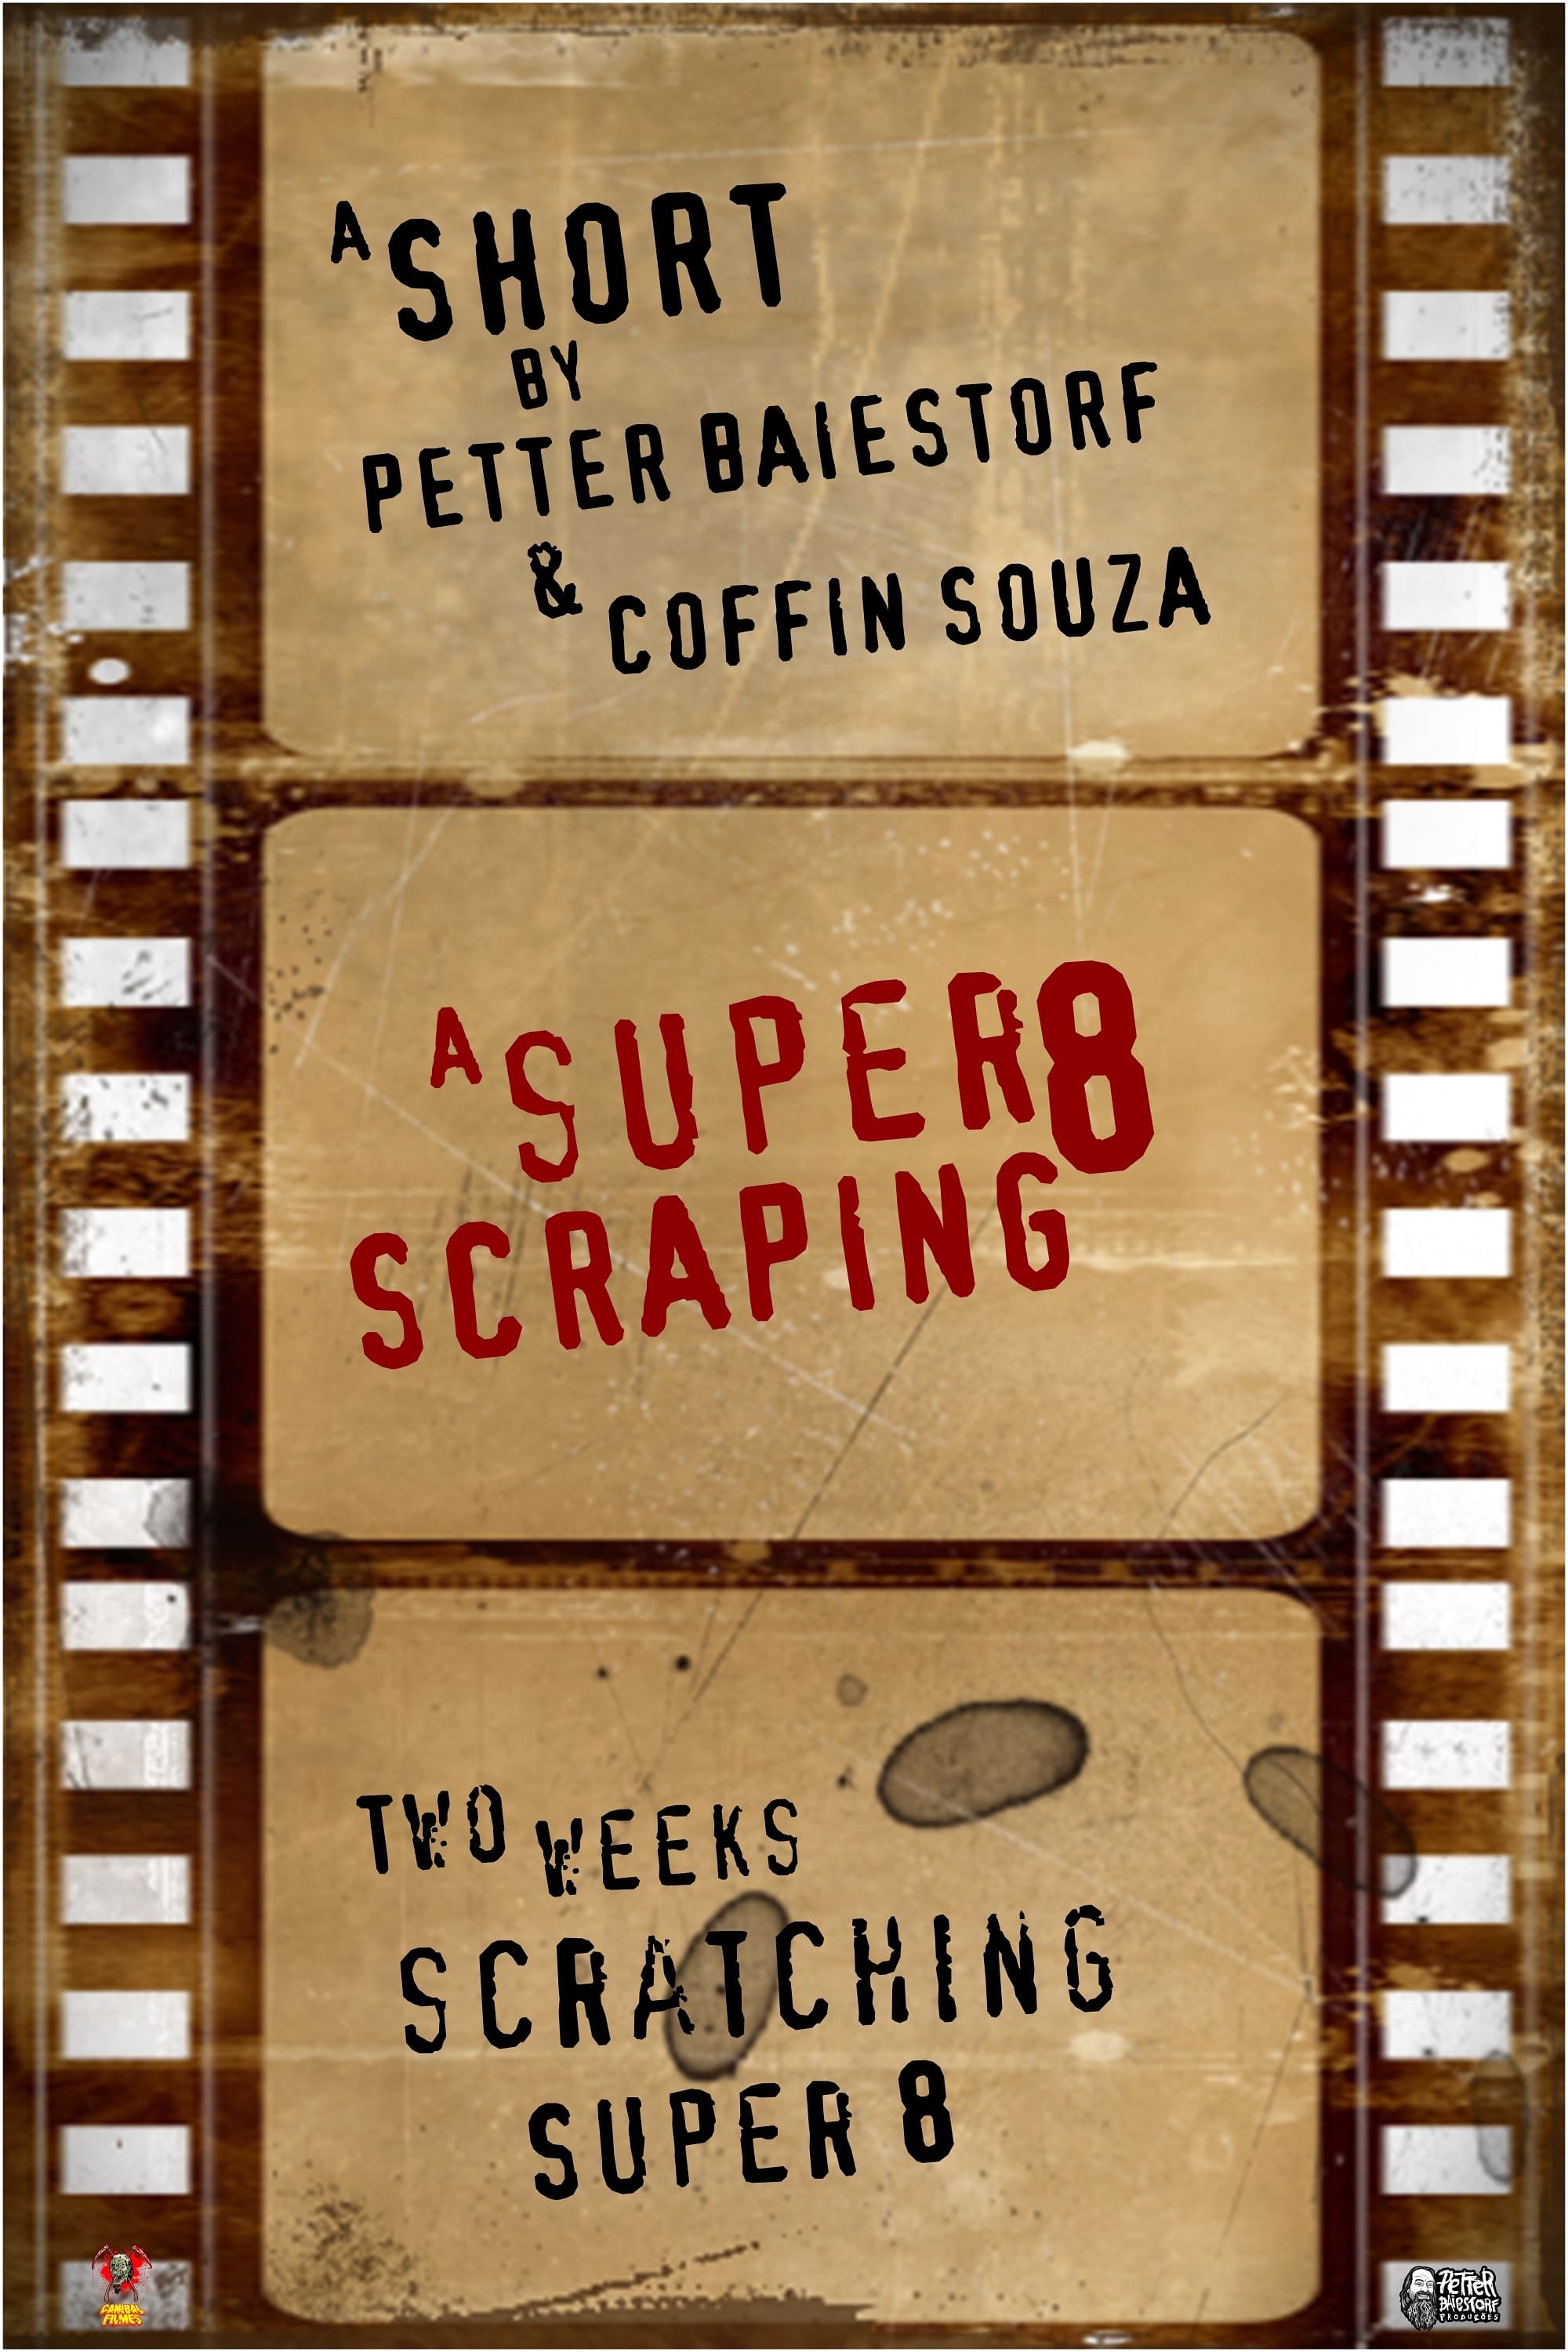 A Super 8 Scraping